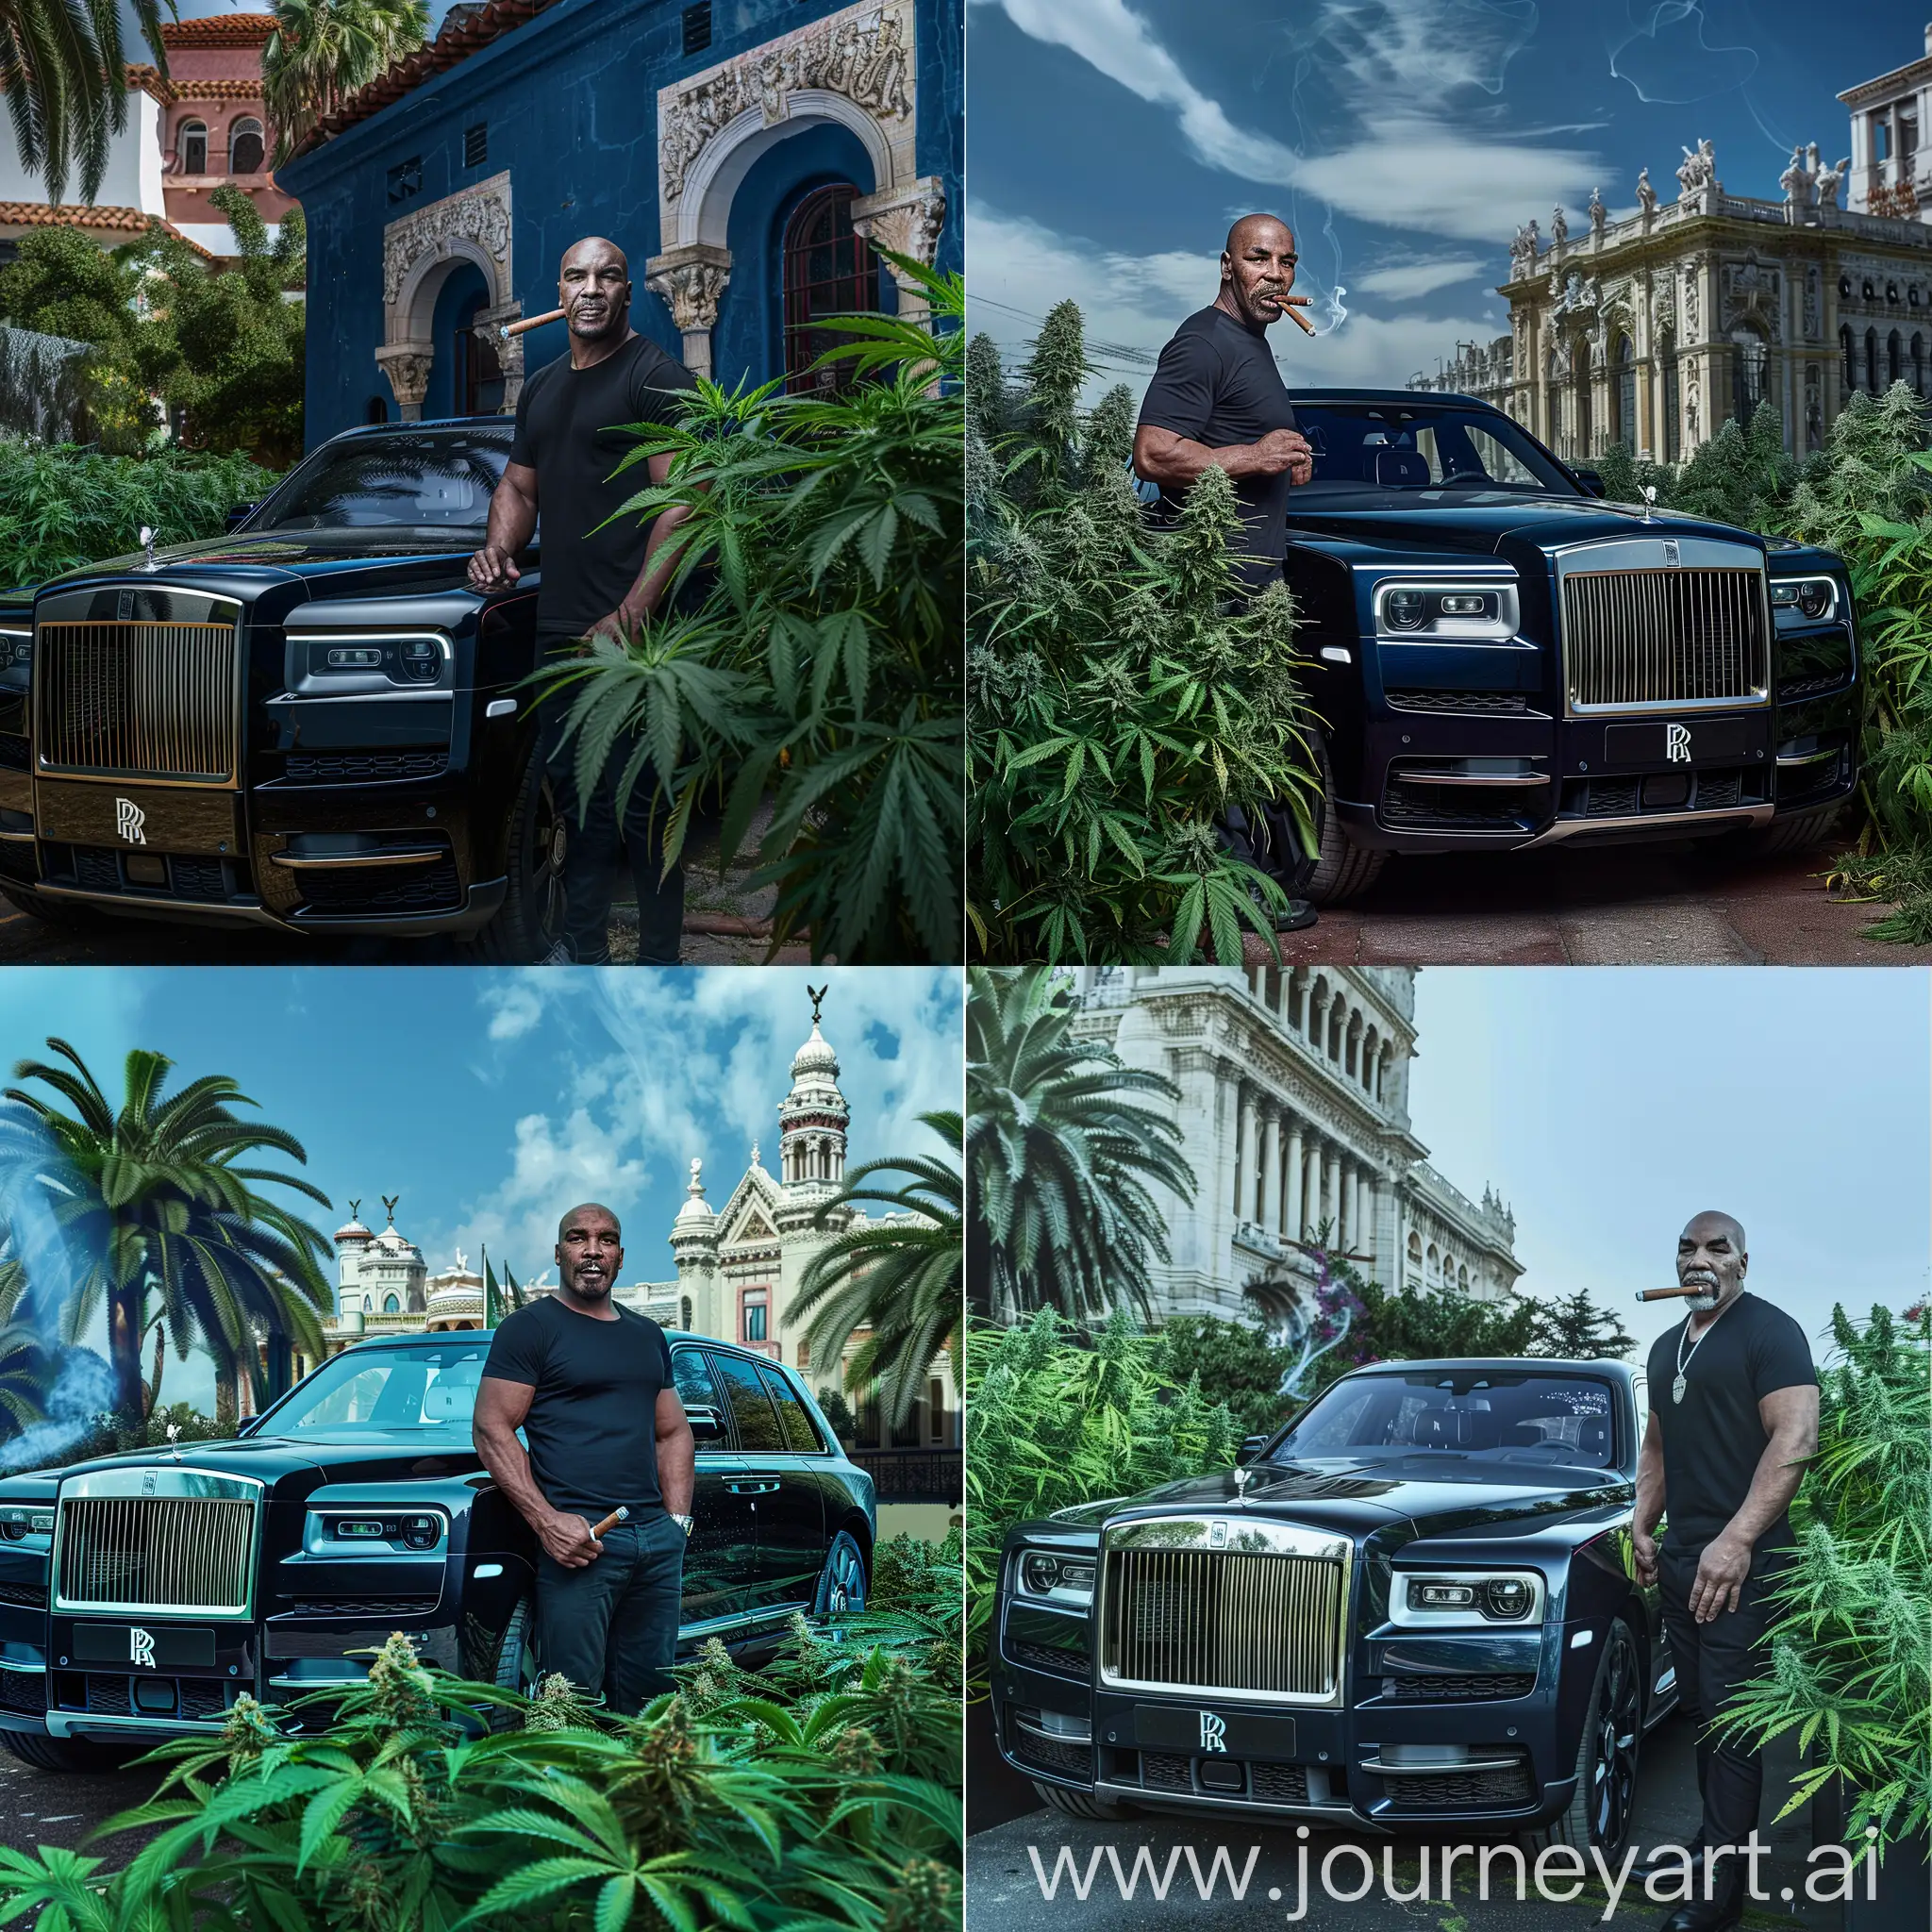 Майк тайсон стоит рядом черным Rolls Royce Cullinan, с сигарой на фоне красивого дворца и растения канабиса зеленого цвета. Преобладает синий, черный и белый цвет. 4k 1080p.